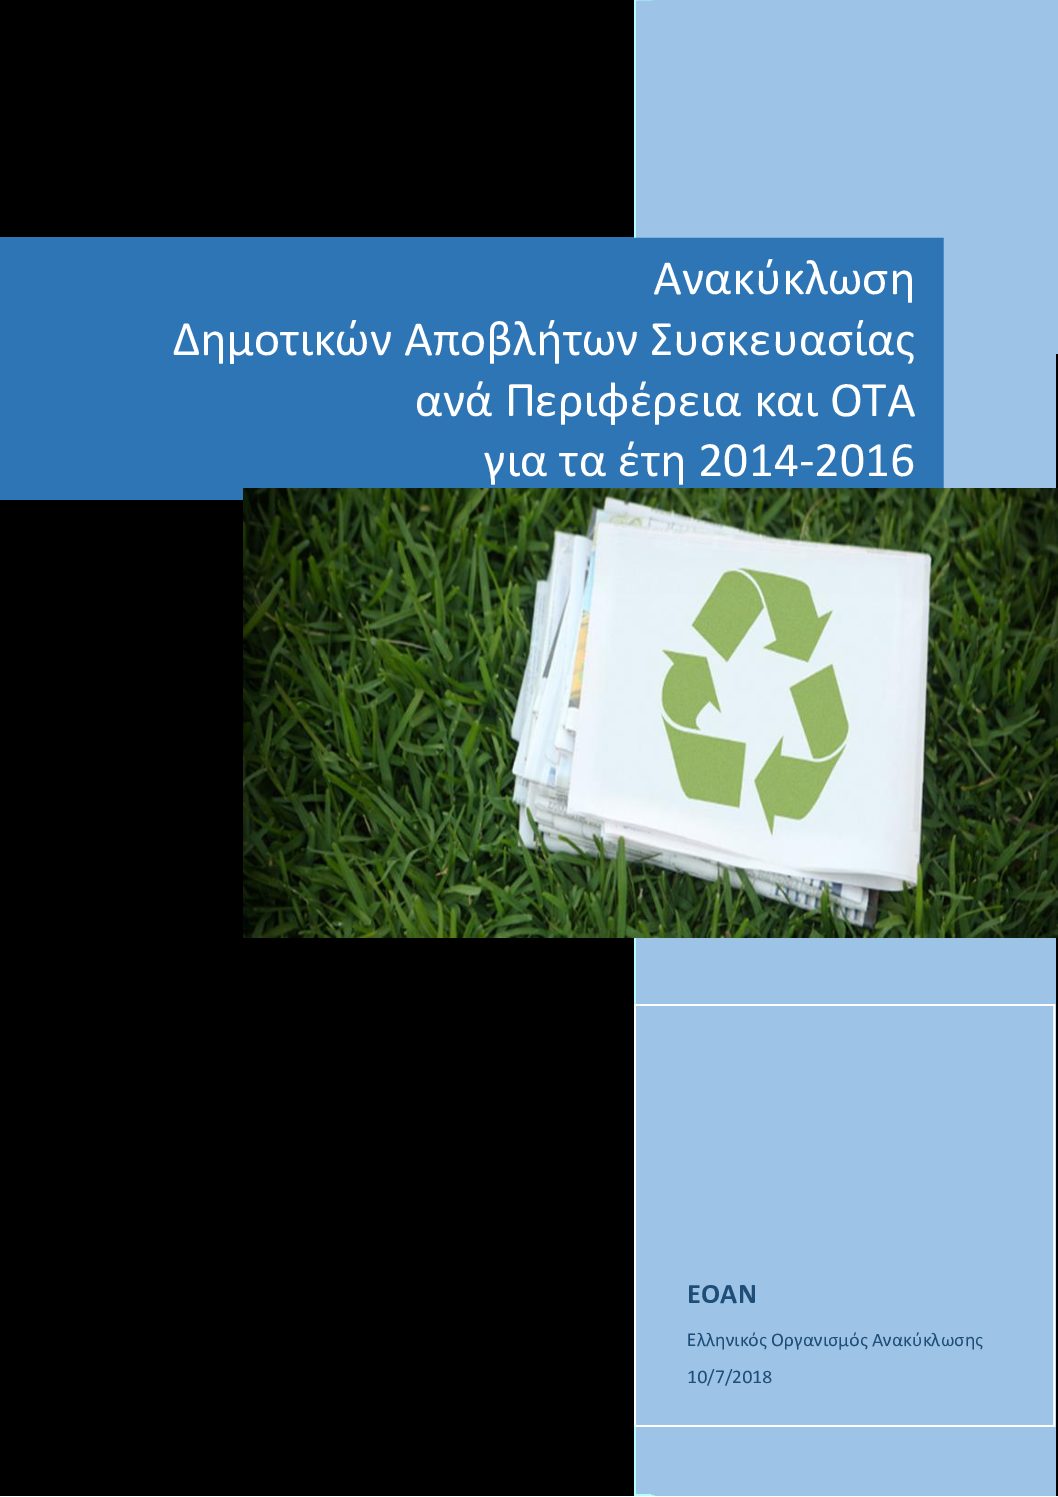 Ανακύκλωση Δημοτικών Αποβλήτων Συσκευασίας ανά Περιφέρεια και ΟΤΑ